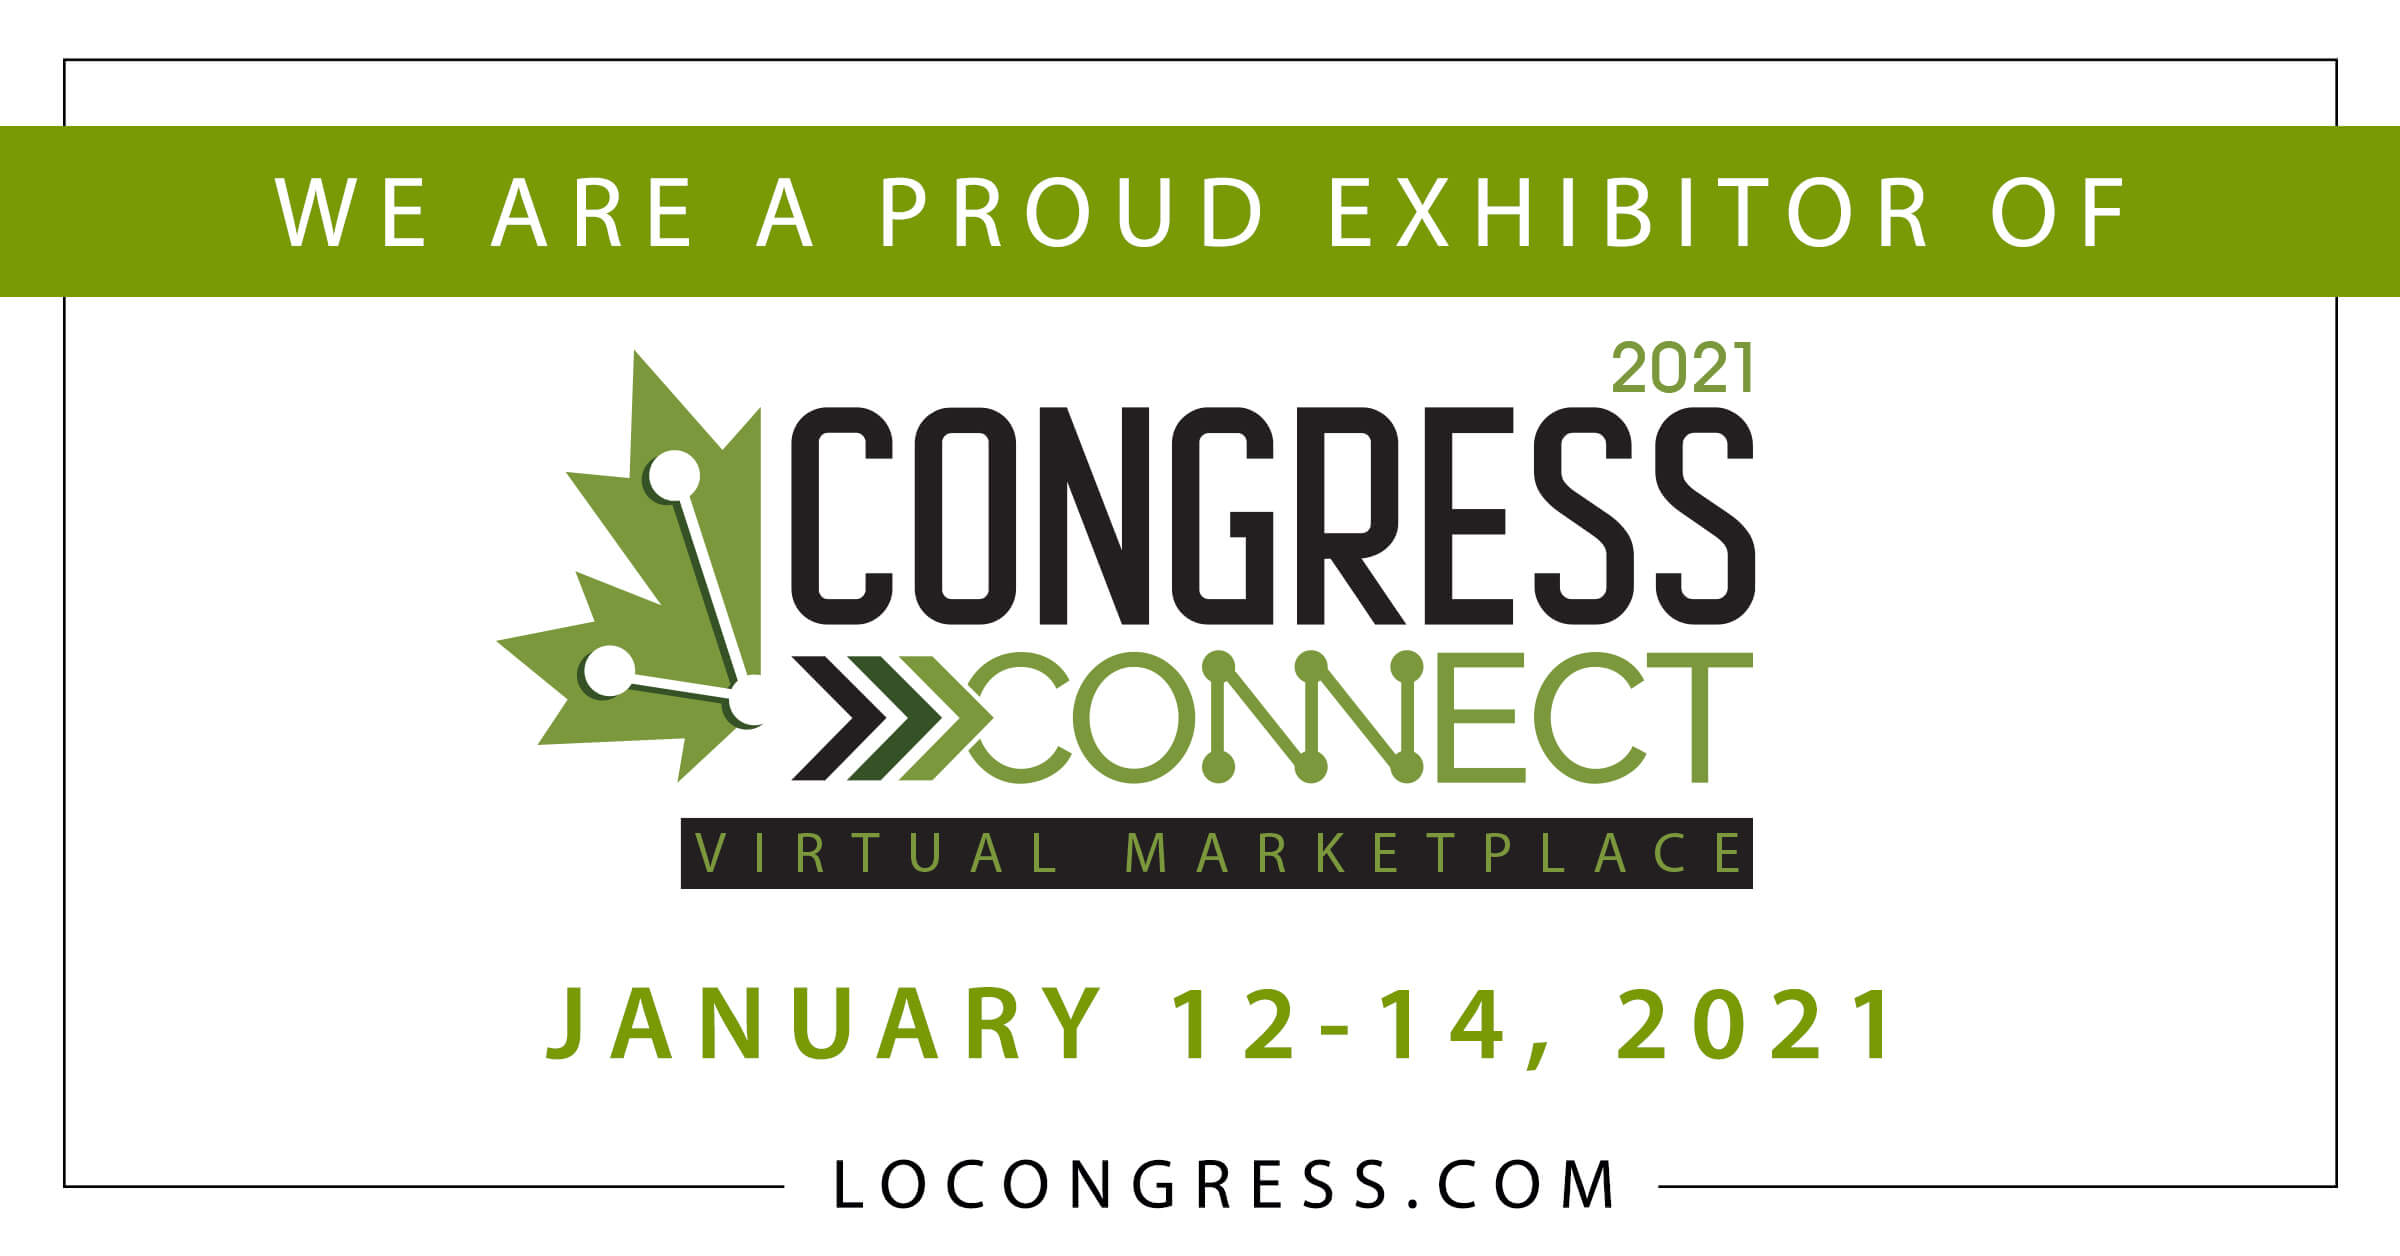 Congress Connect - Exhibitor Social Media